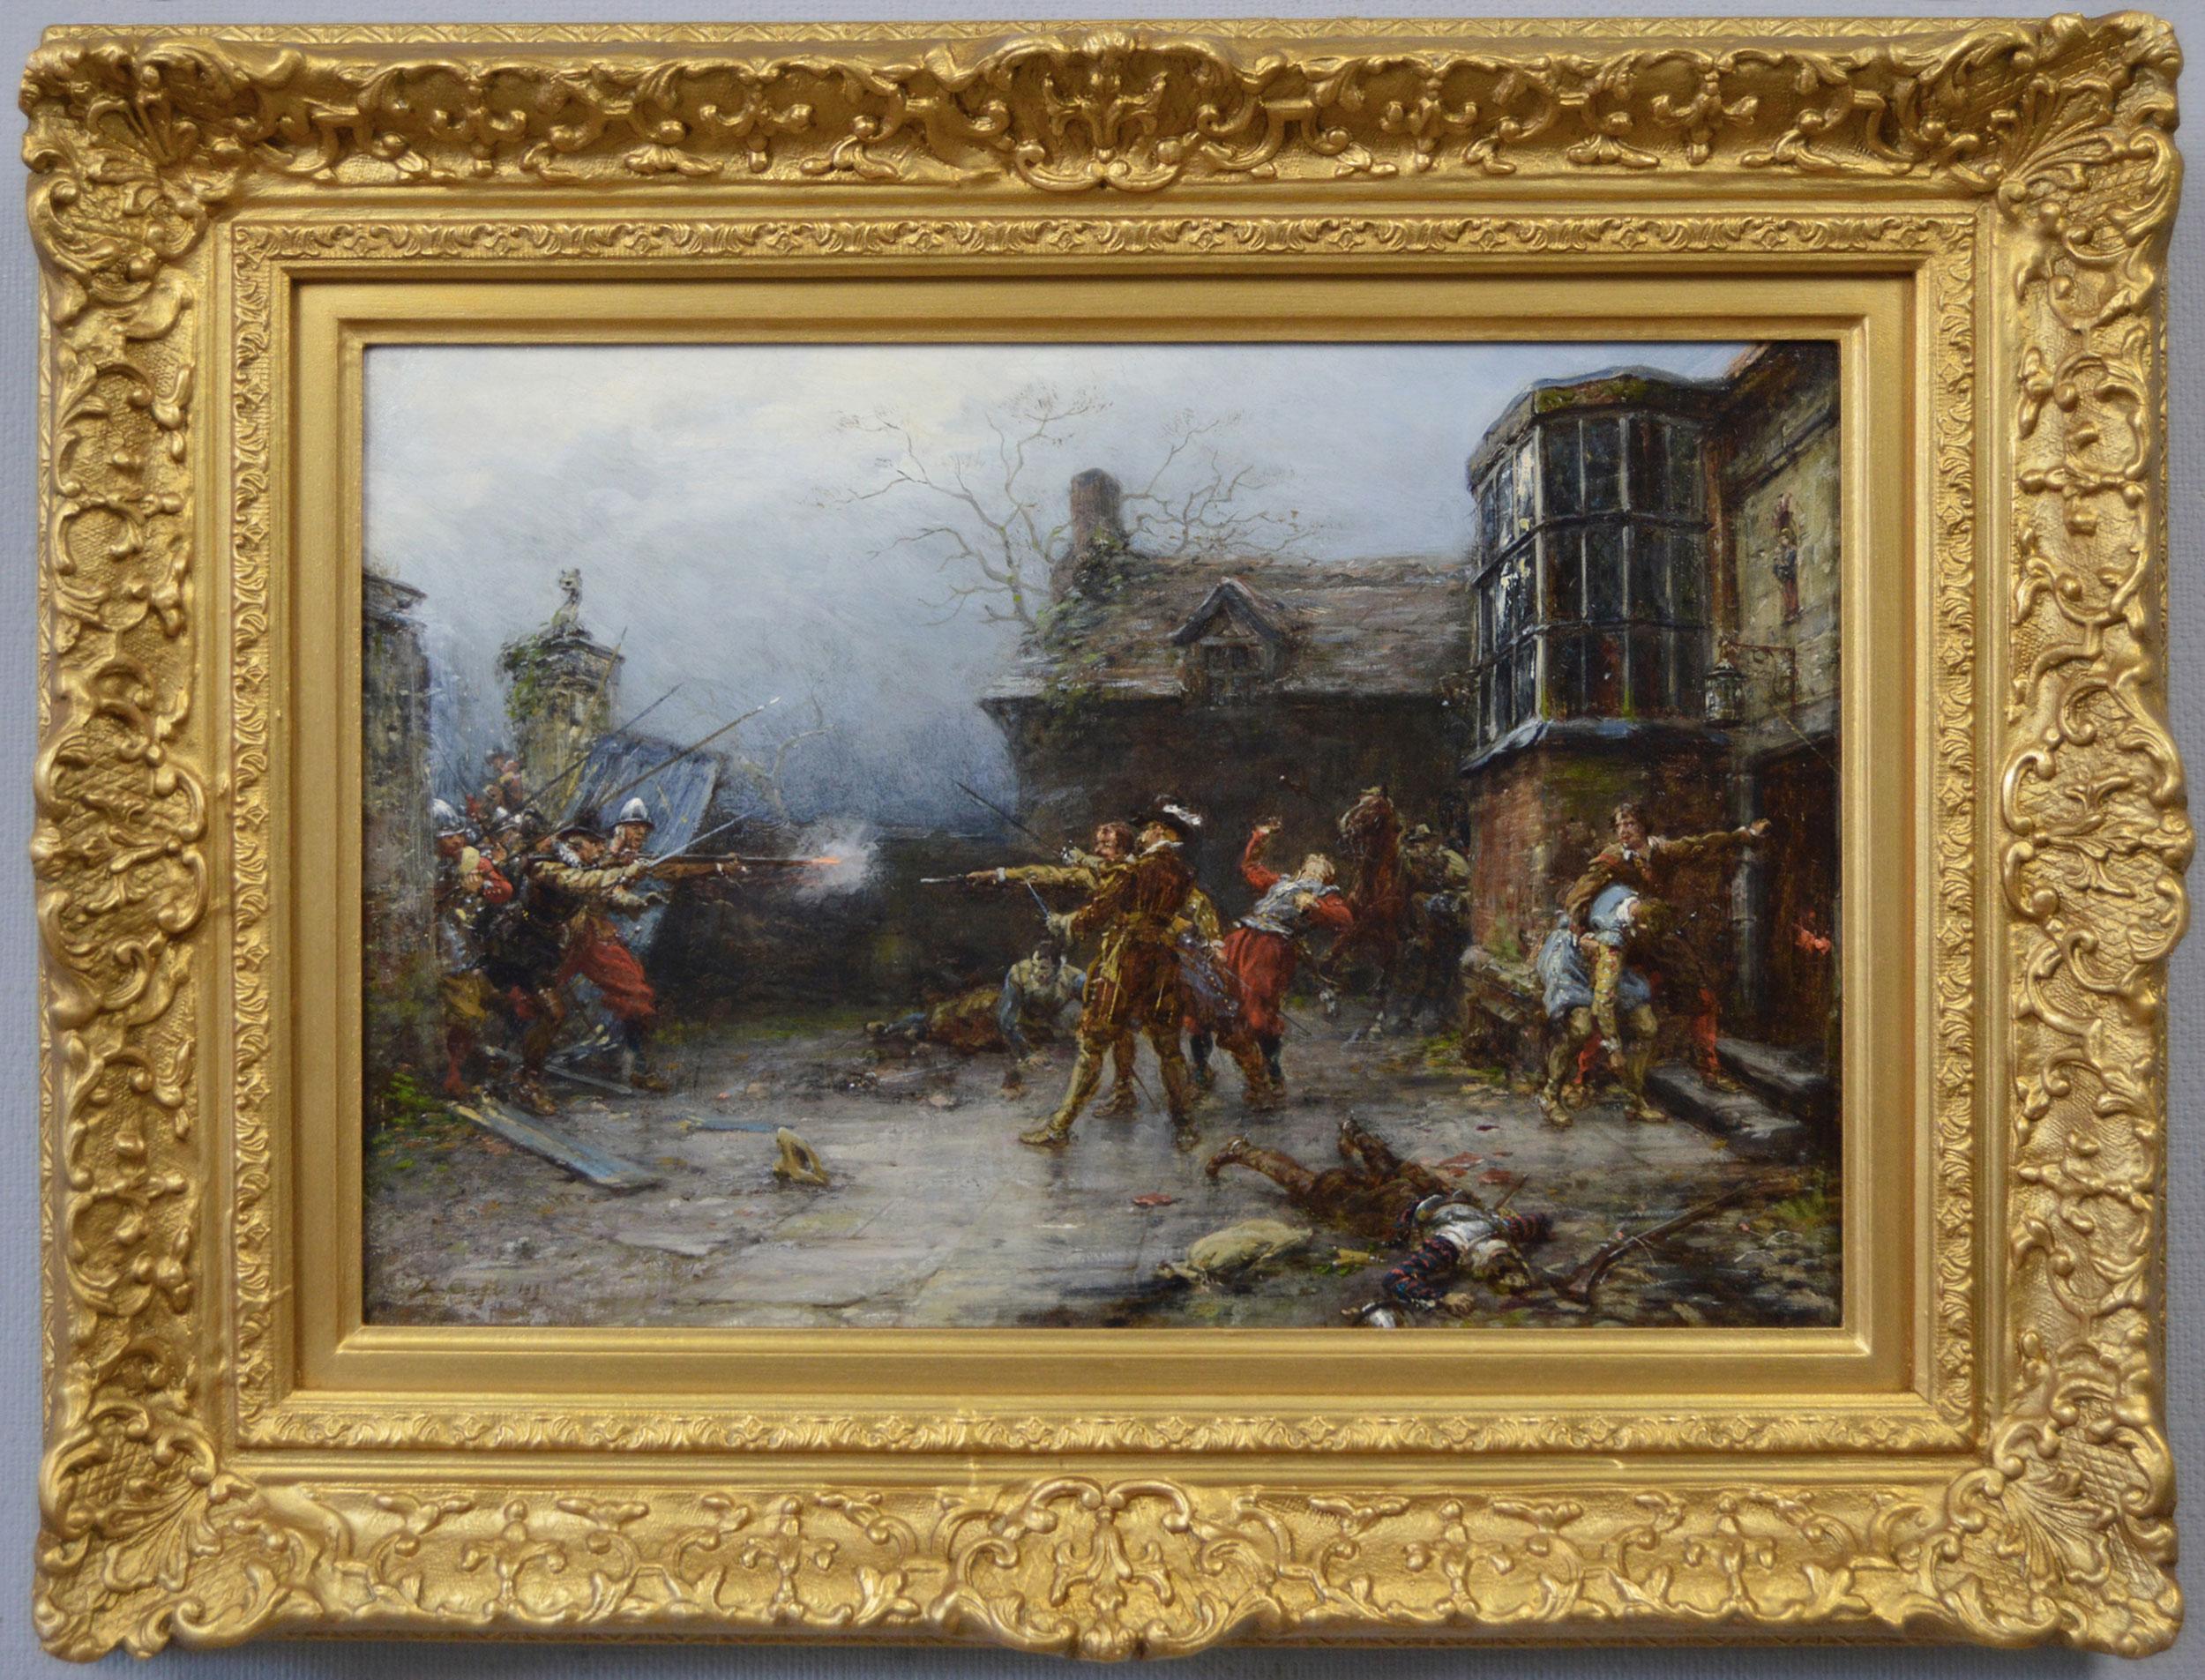 Landscape Painting Ernest Crofts - Peinture à l'huile de genre historique du 19e siècle représentant les conspirateurs du complot de la poudre à canon